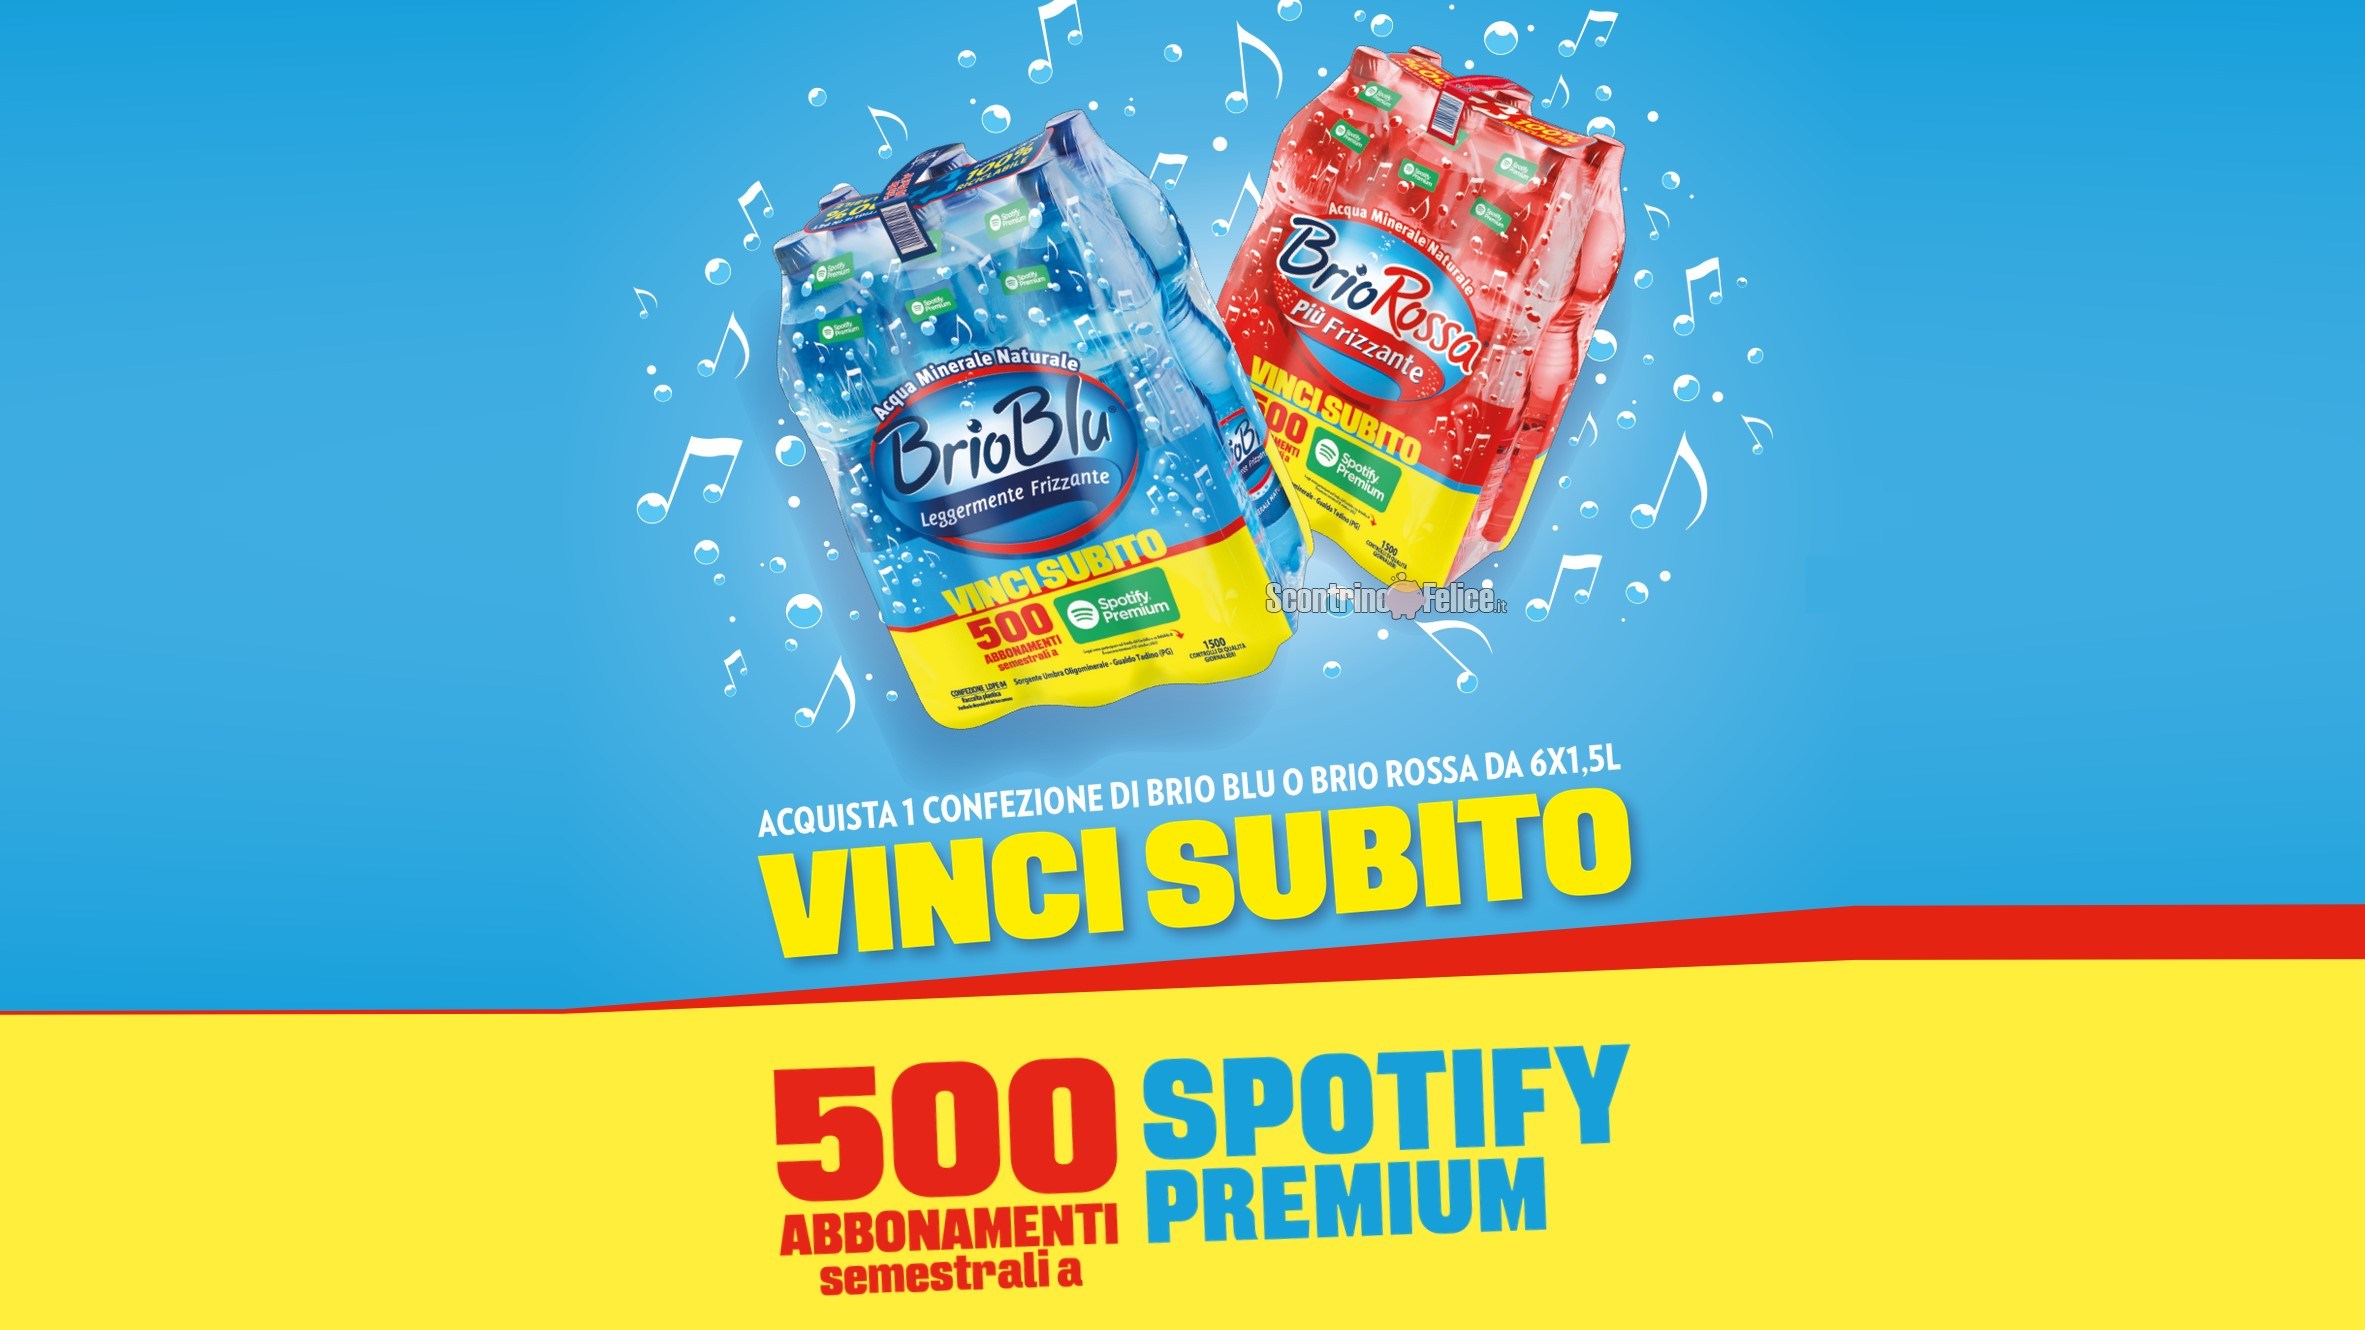 Concorso acqua Brio Blu e Brio Rossa: in palio 500 abbonamenti semestrali a Spotify Premium!